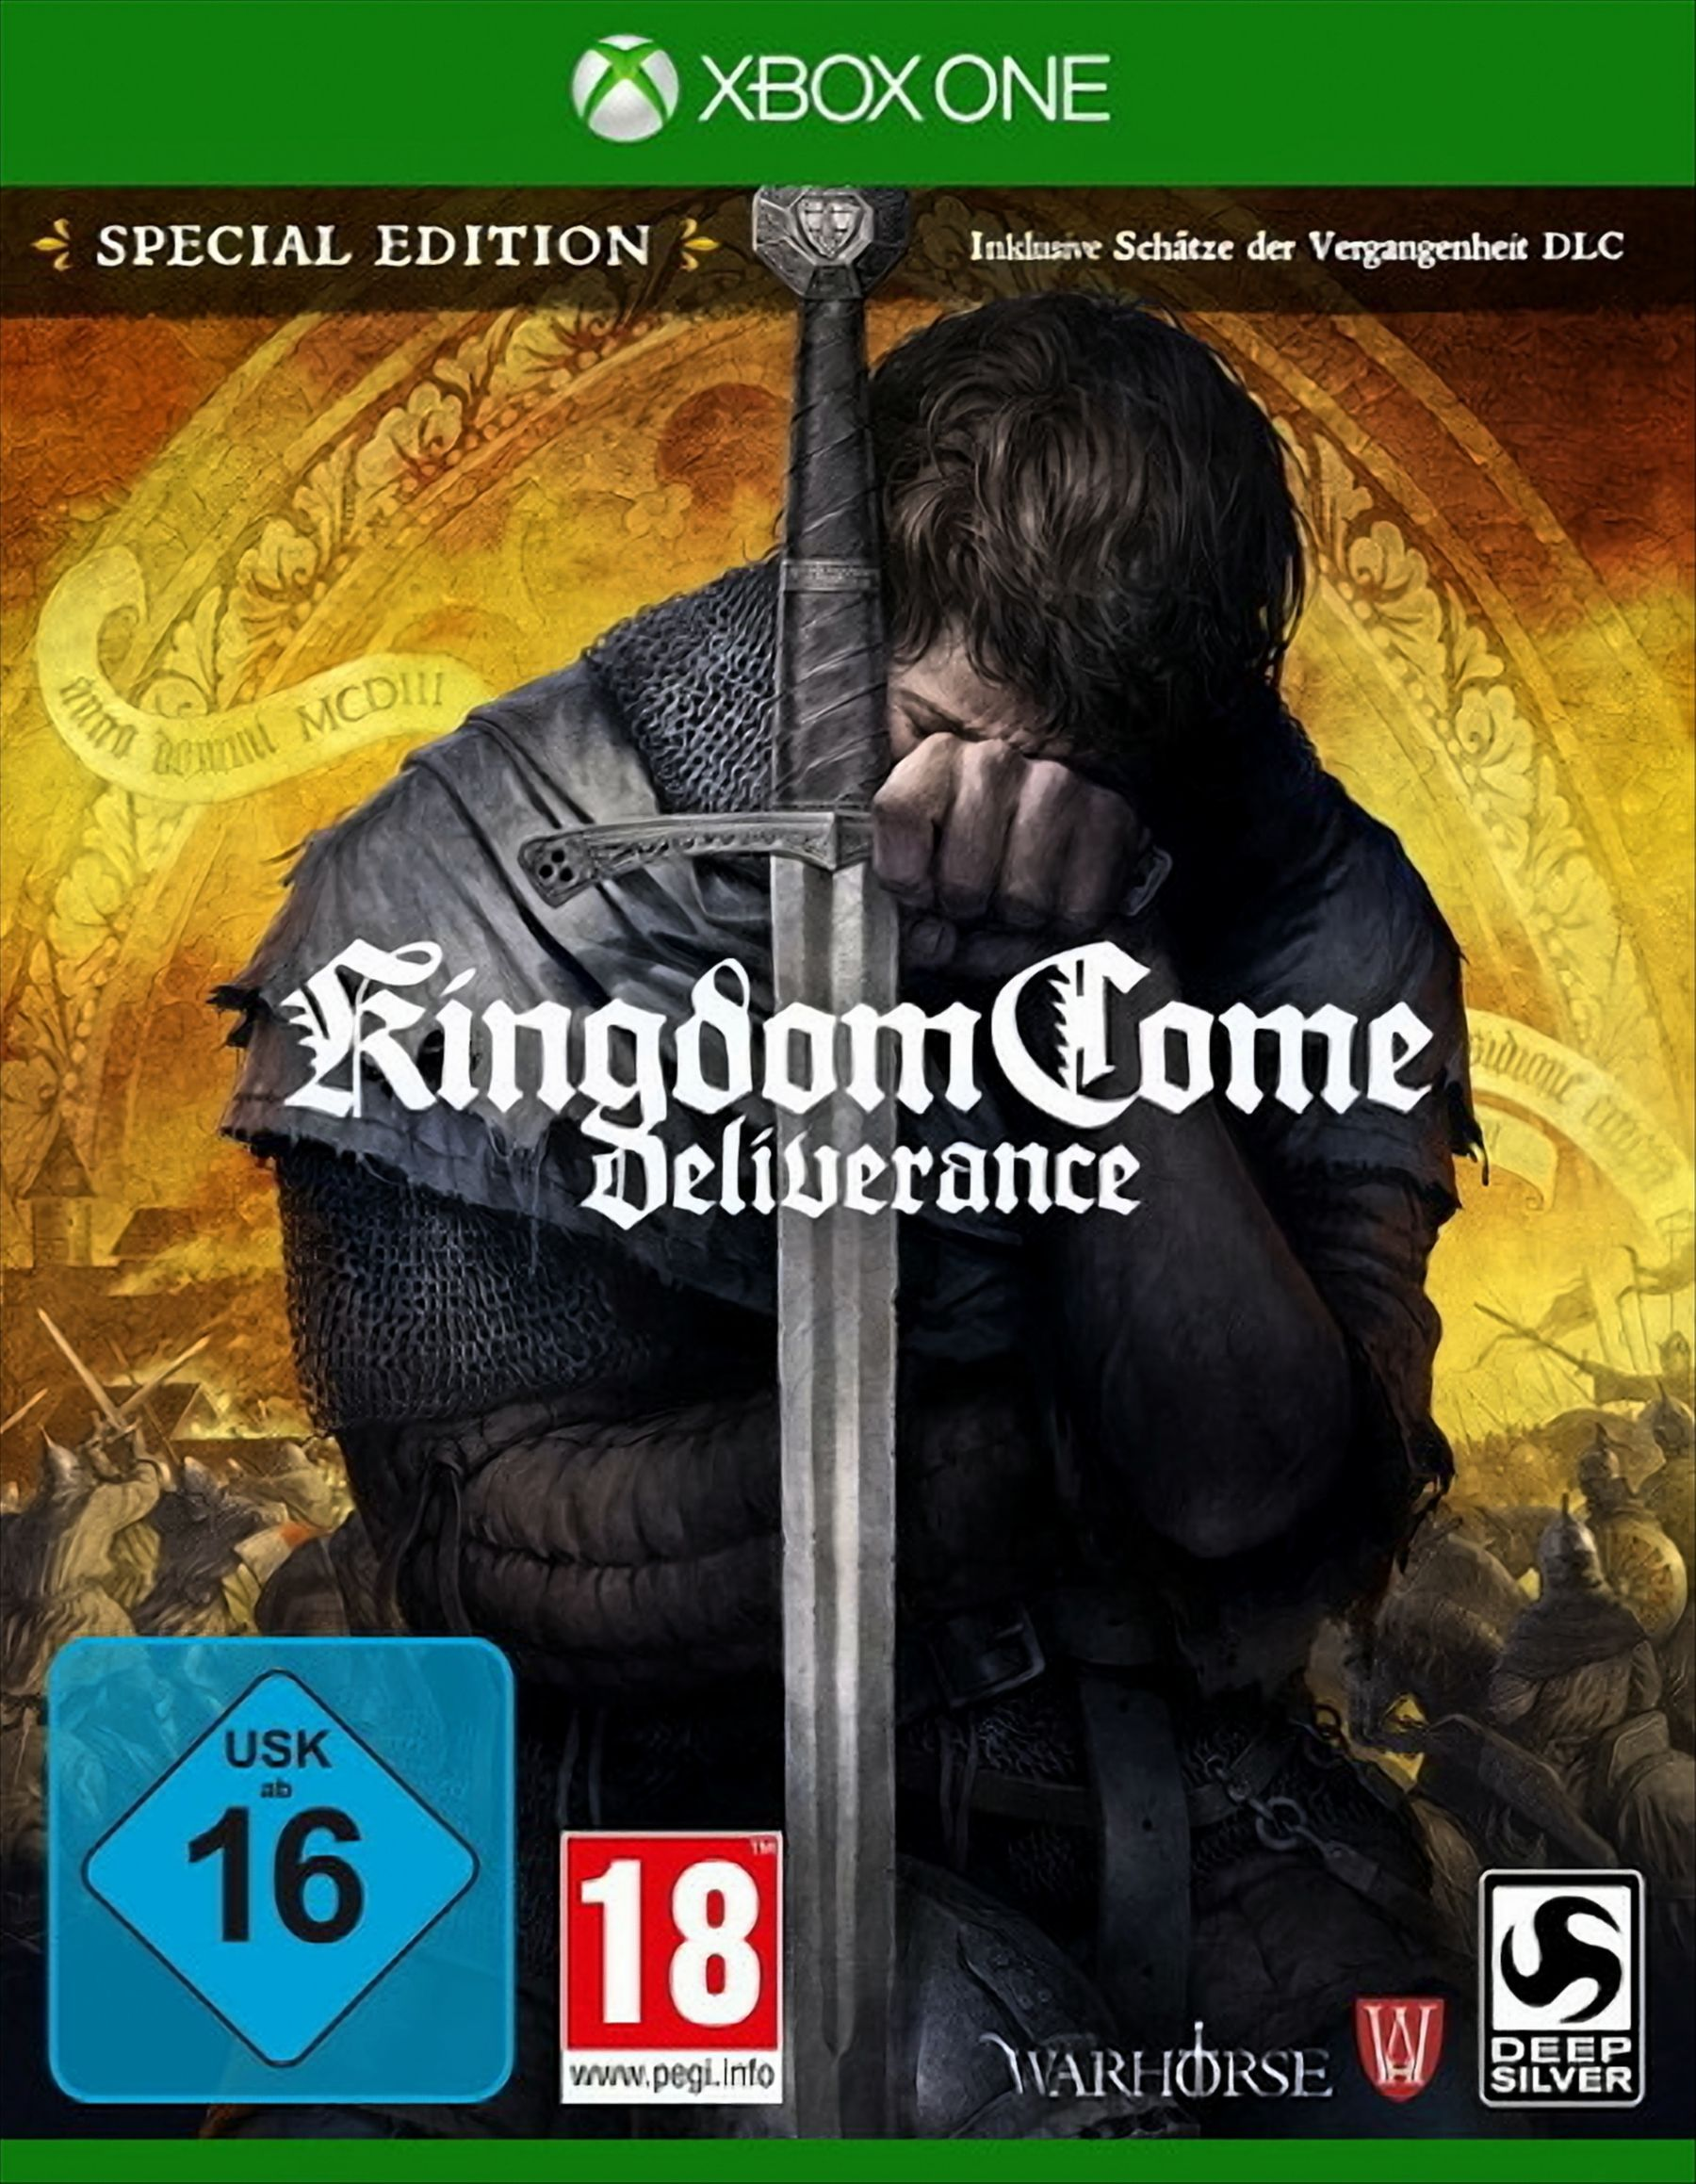 Kingdom Come: Deliverance - [Xbox One